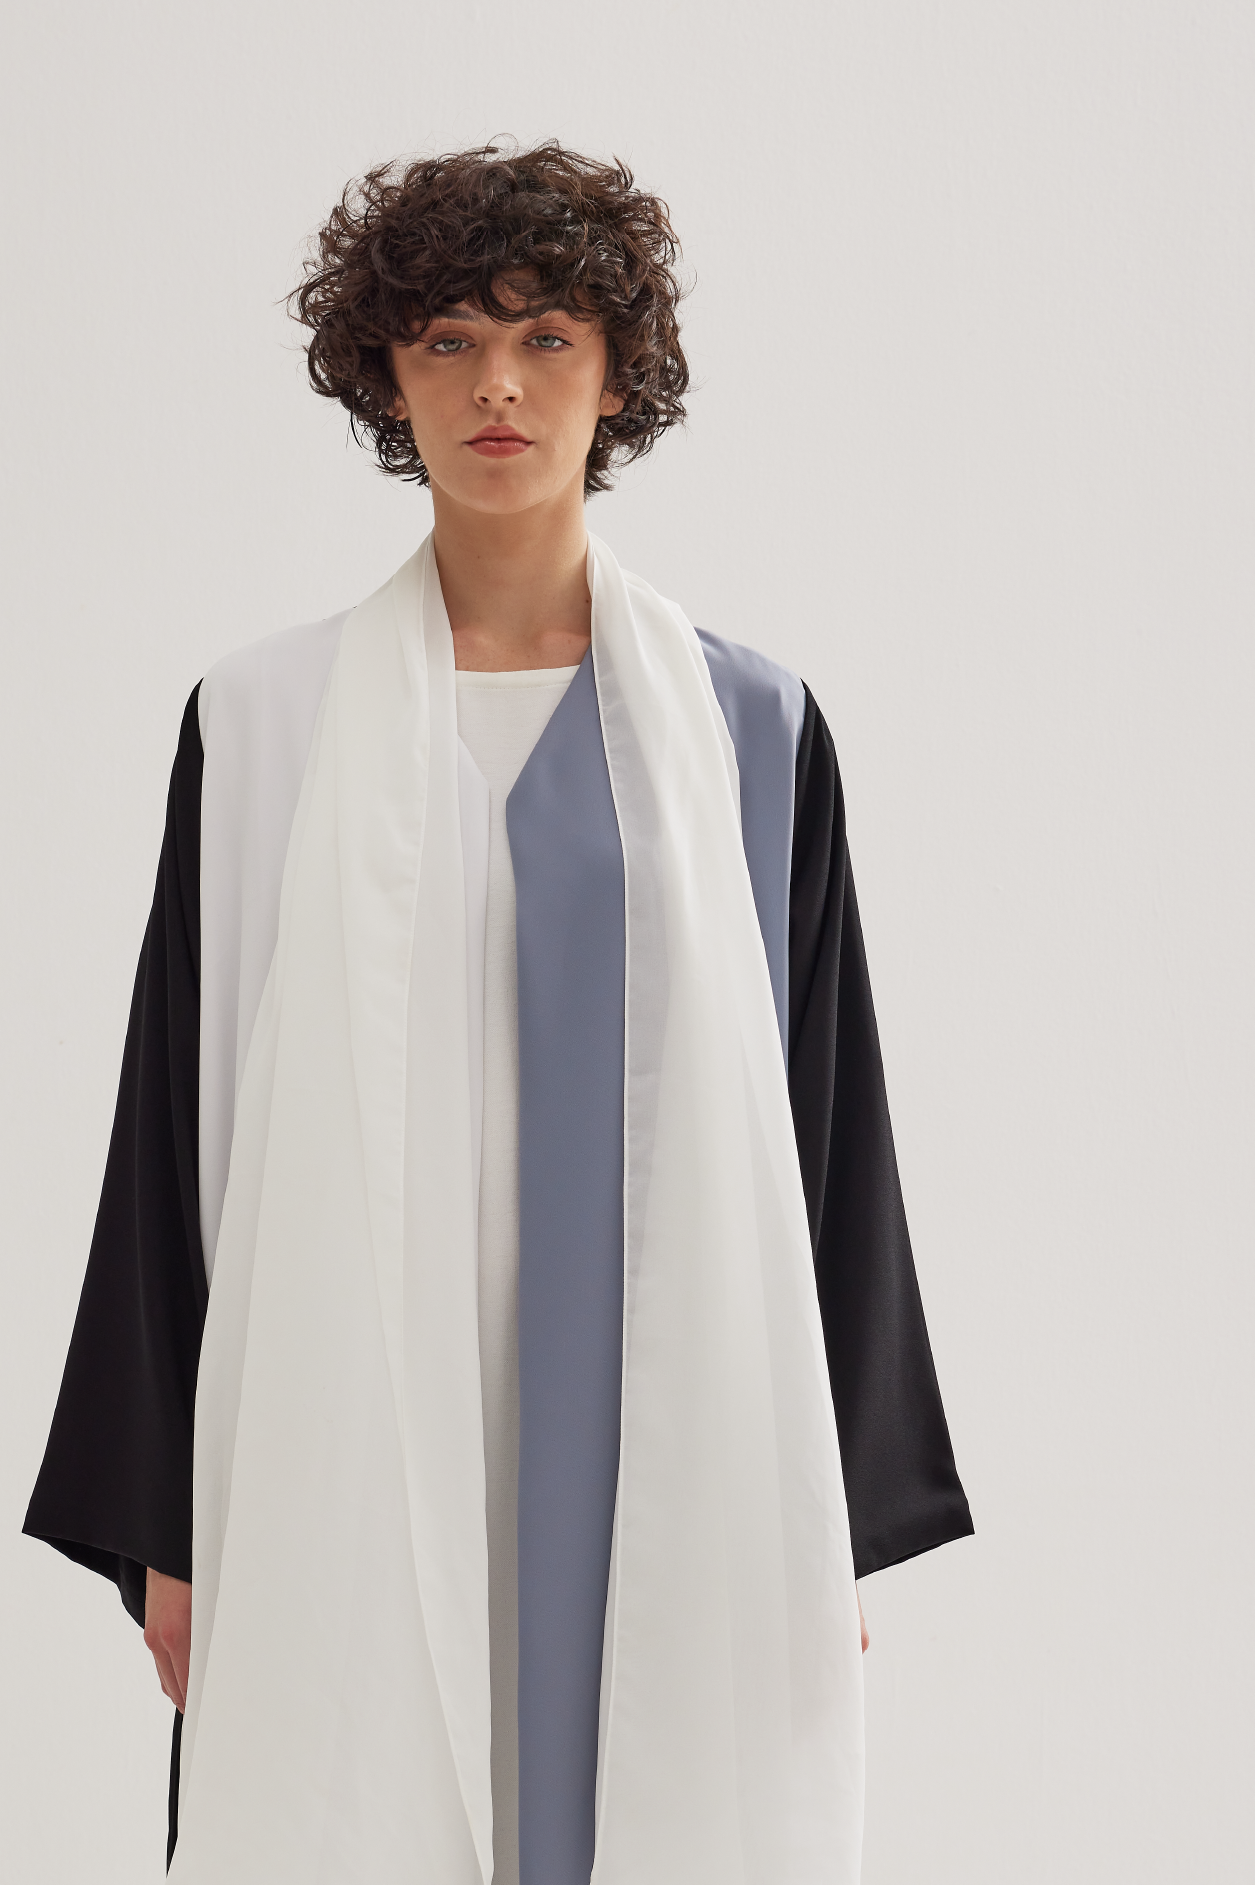 Three-Tone Abaya in Bluish Grey, White, and Black